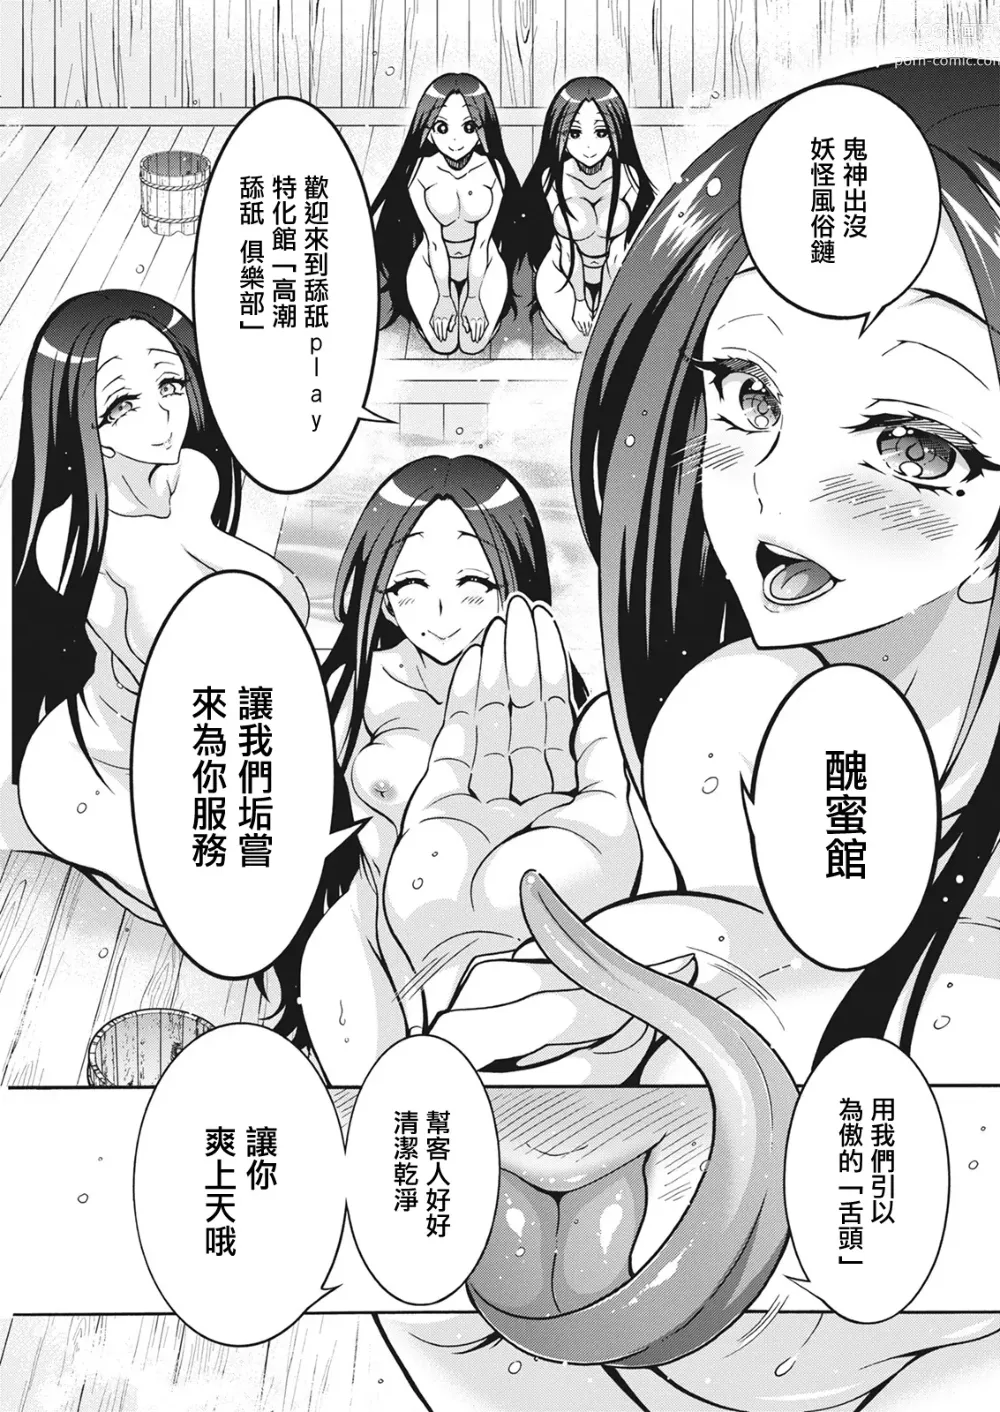 Page 5 of manga 妖怪HHH